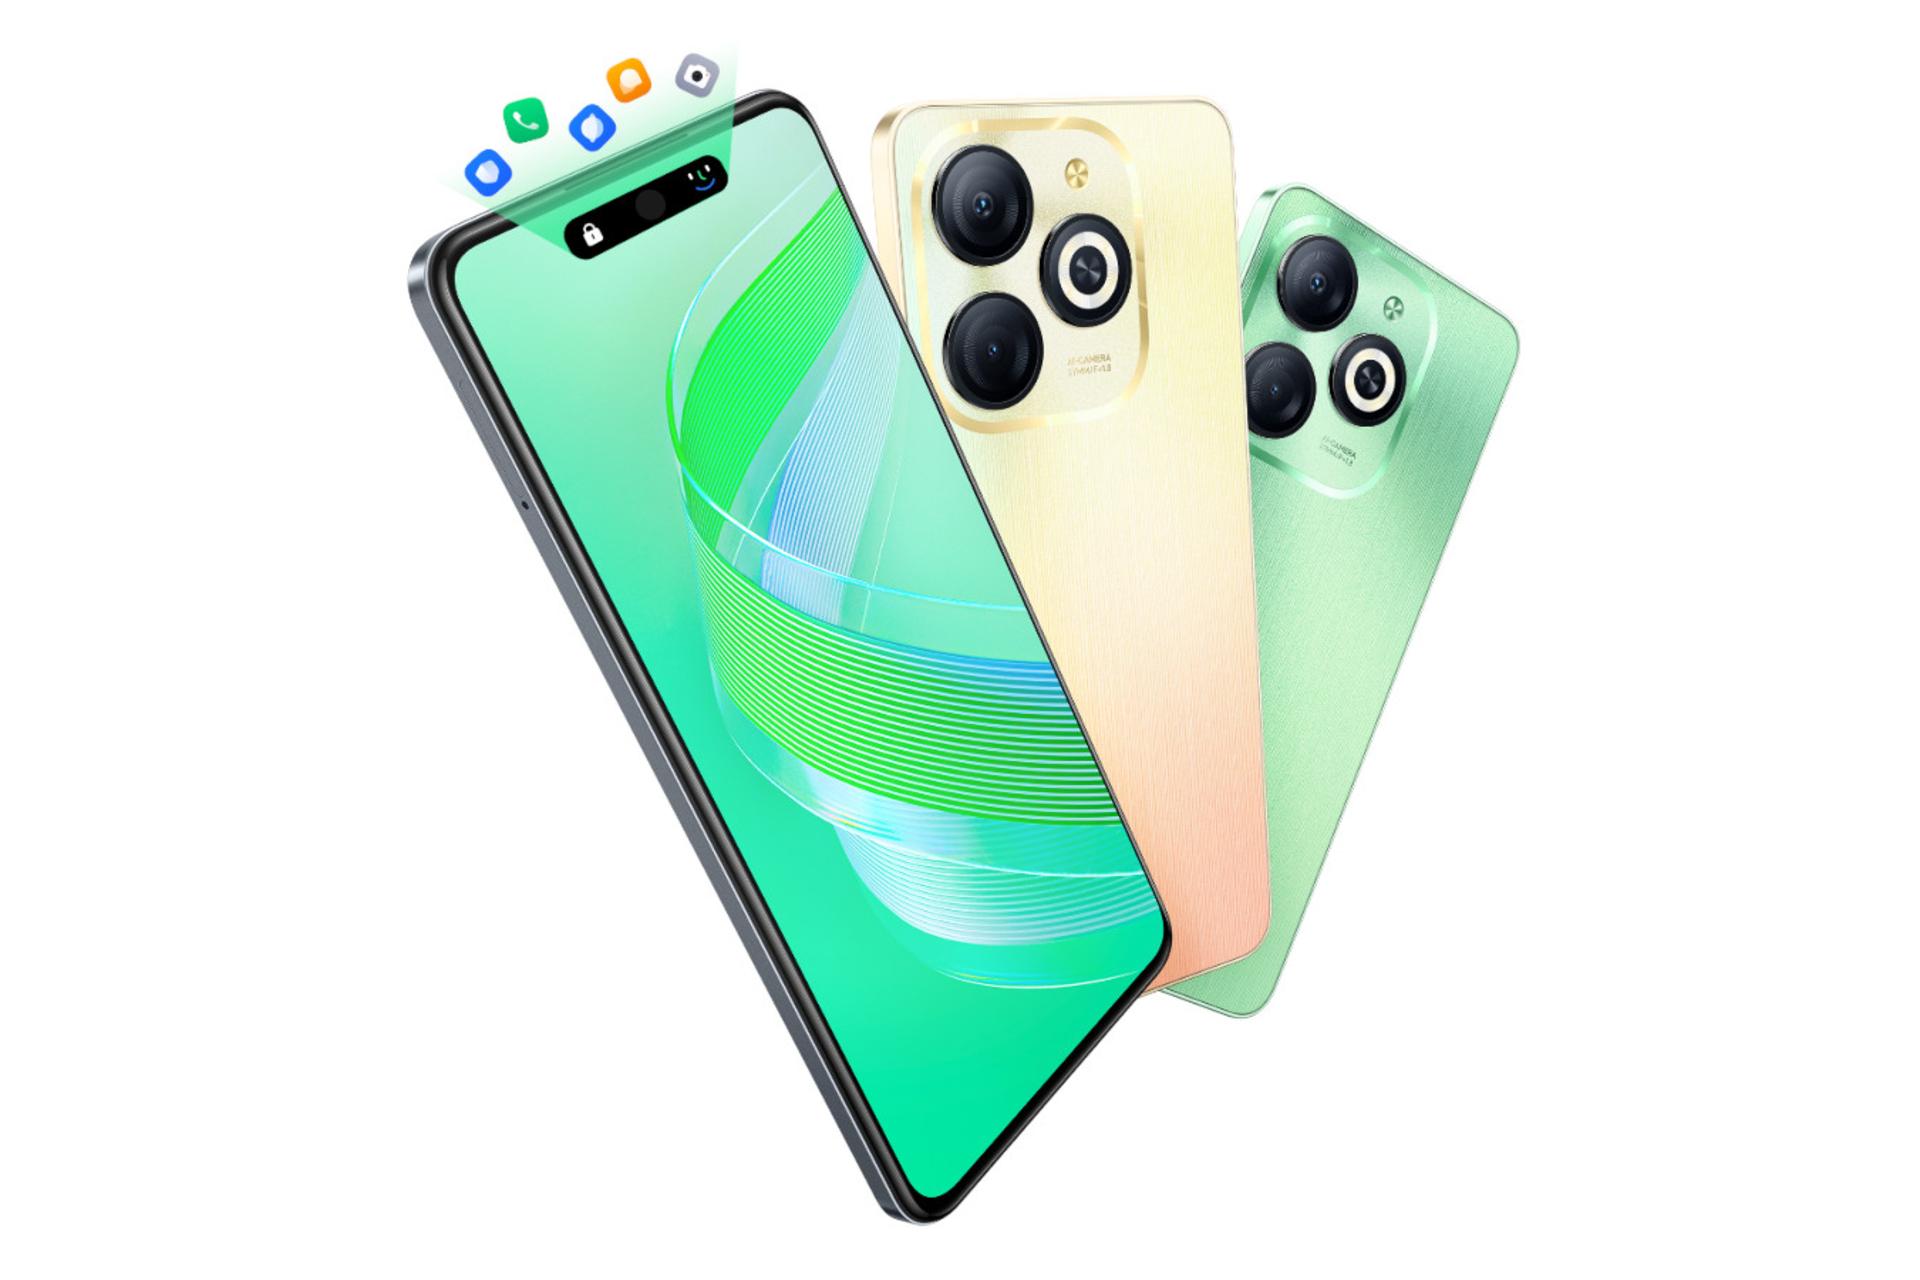 رنگ های مختلف گوشی موبایل اسمارت 8 اینفینیکس / Infinix Smart 8